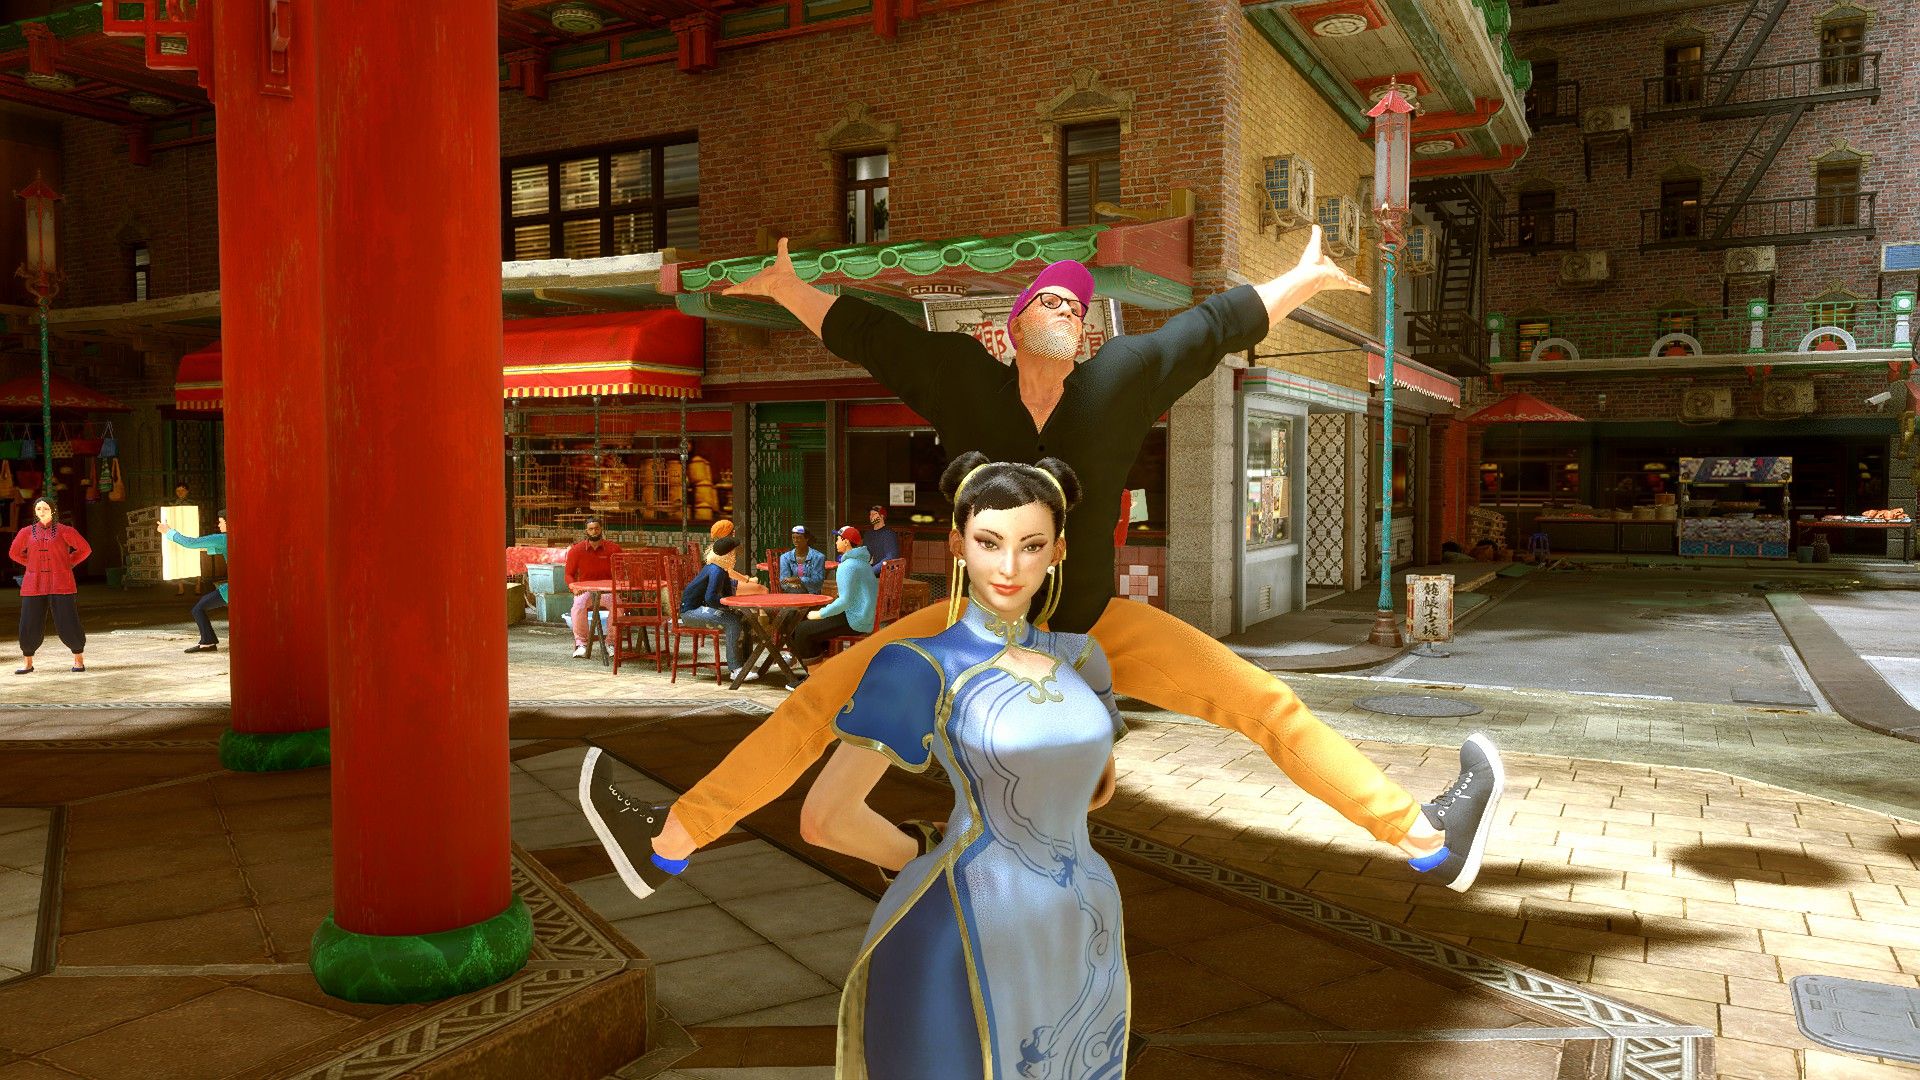 Dans une rue calme de Metro City, notre avatar à casquette fait "youpi" en sautant derrière une dame